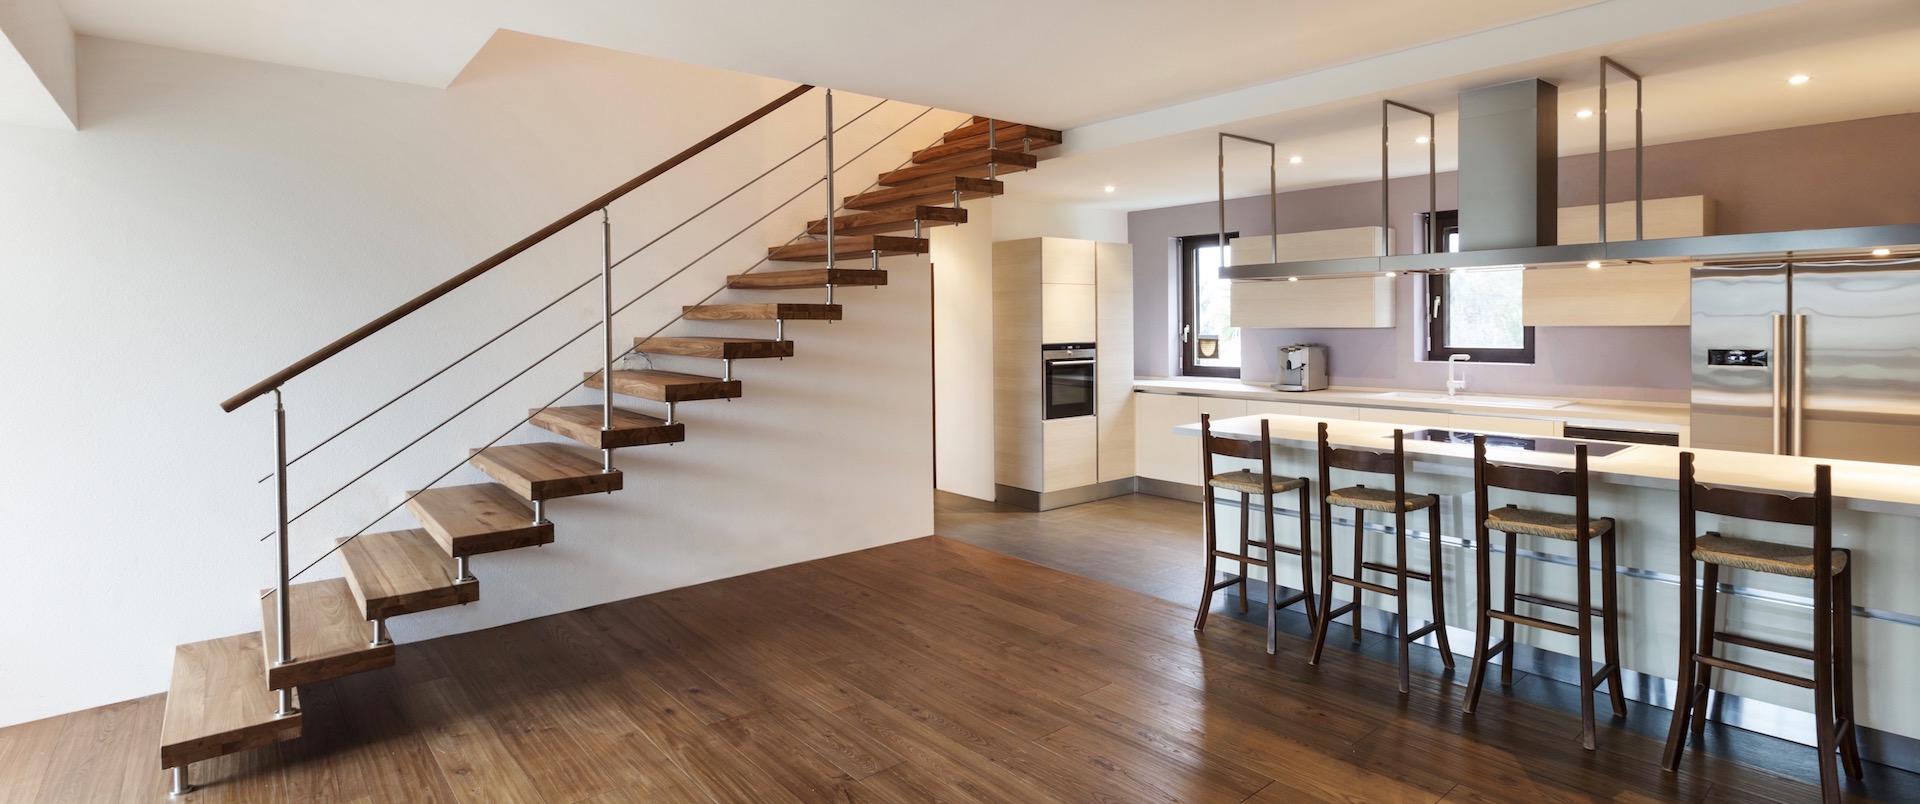 Modern kitchen stairs